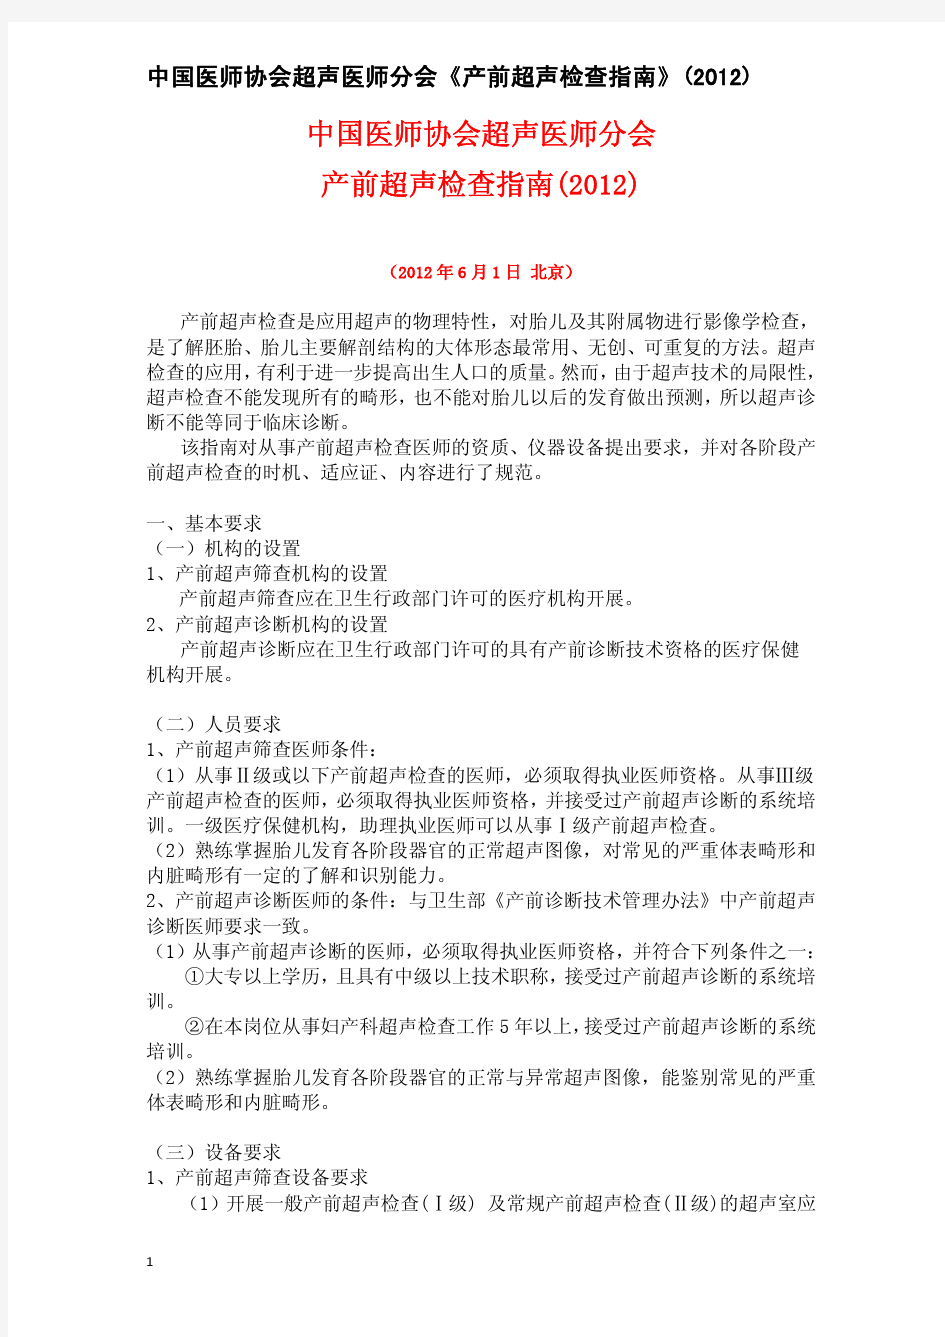 中国医师协会产前超声检查指南(最终稿)20120601通过[1]